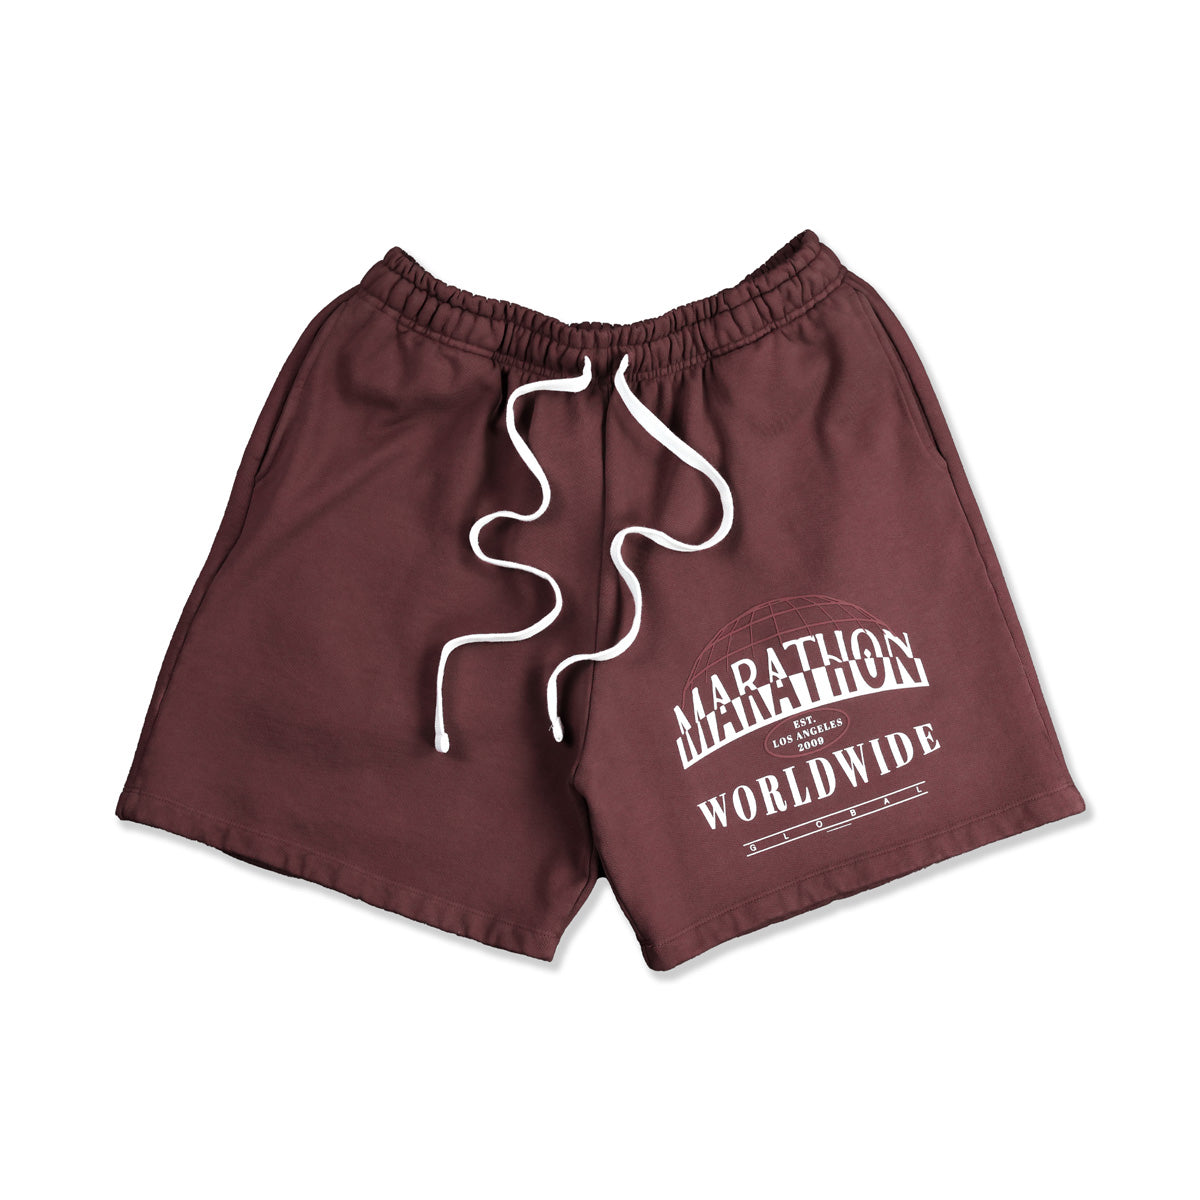 Marathon Worldwide Shorts - Mauve - Front